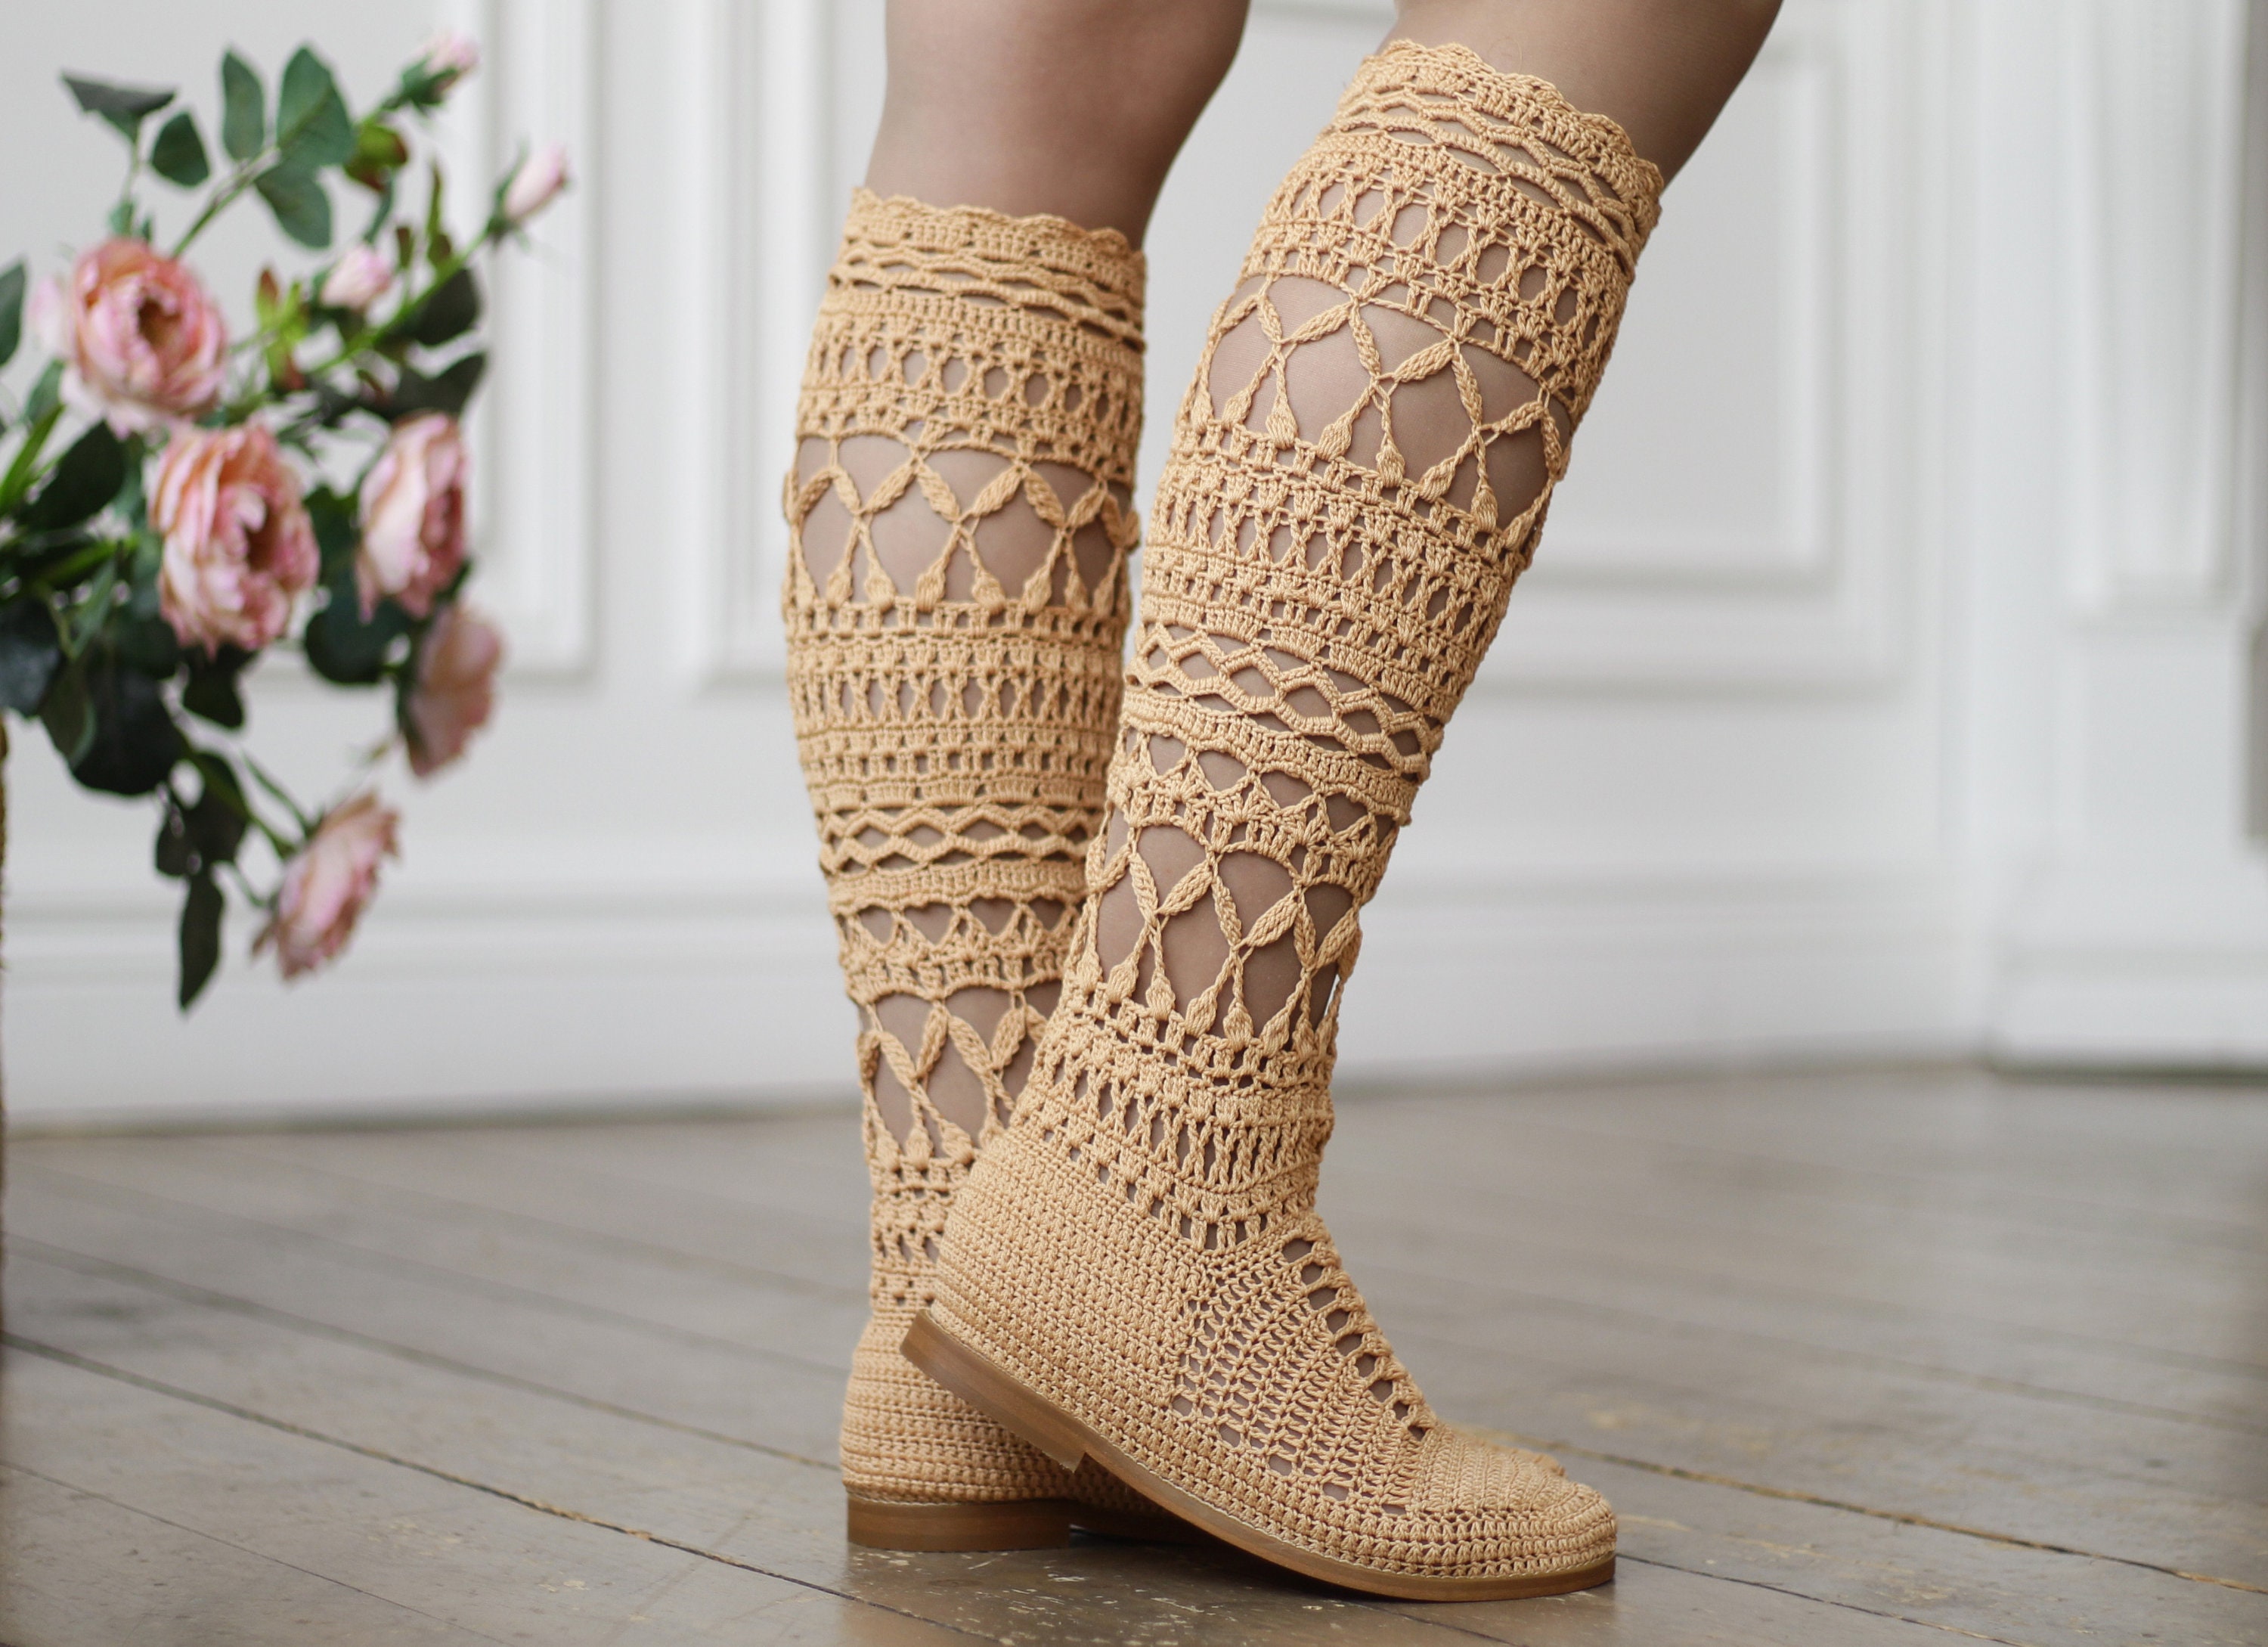 Knee high boots Crochet summer boots women Moccasins | Etsy